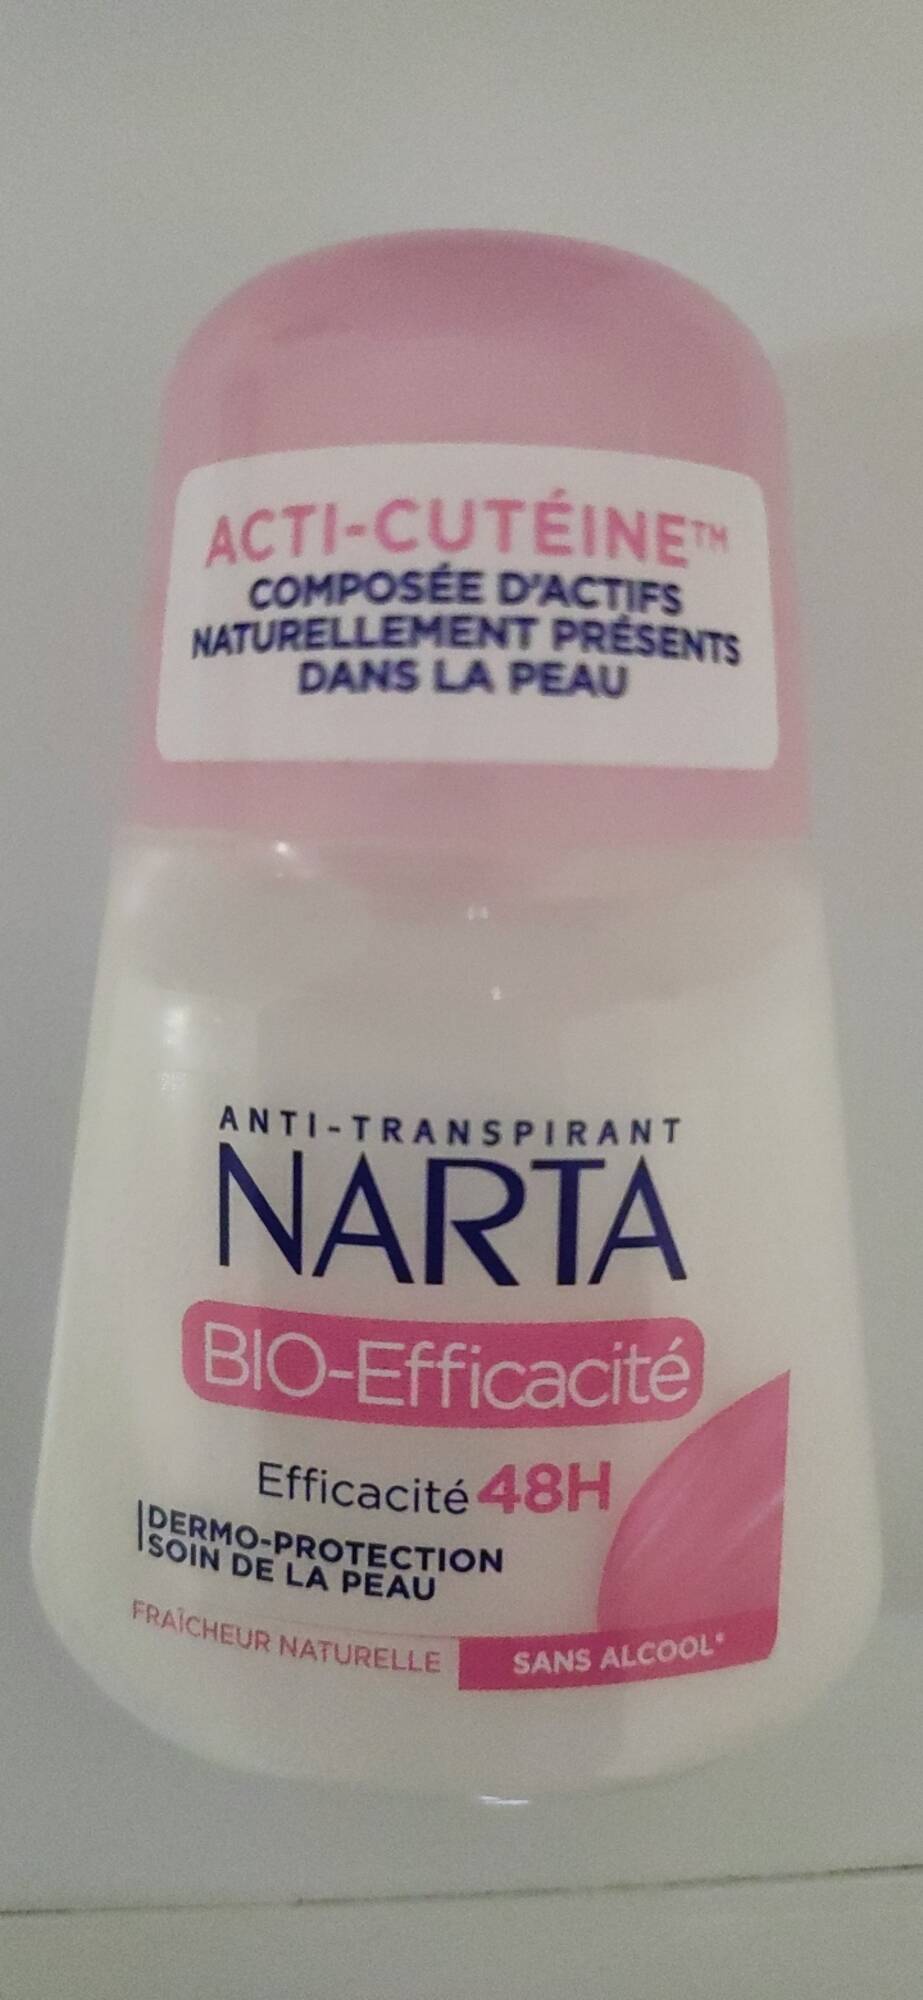 NARTA - Bio efficacité - Acti-cutéine anti-transpirant 48h